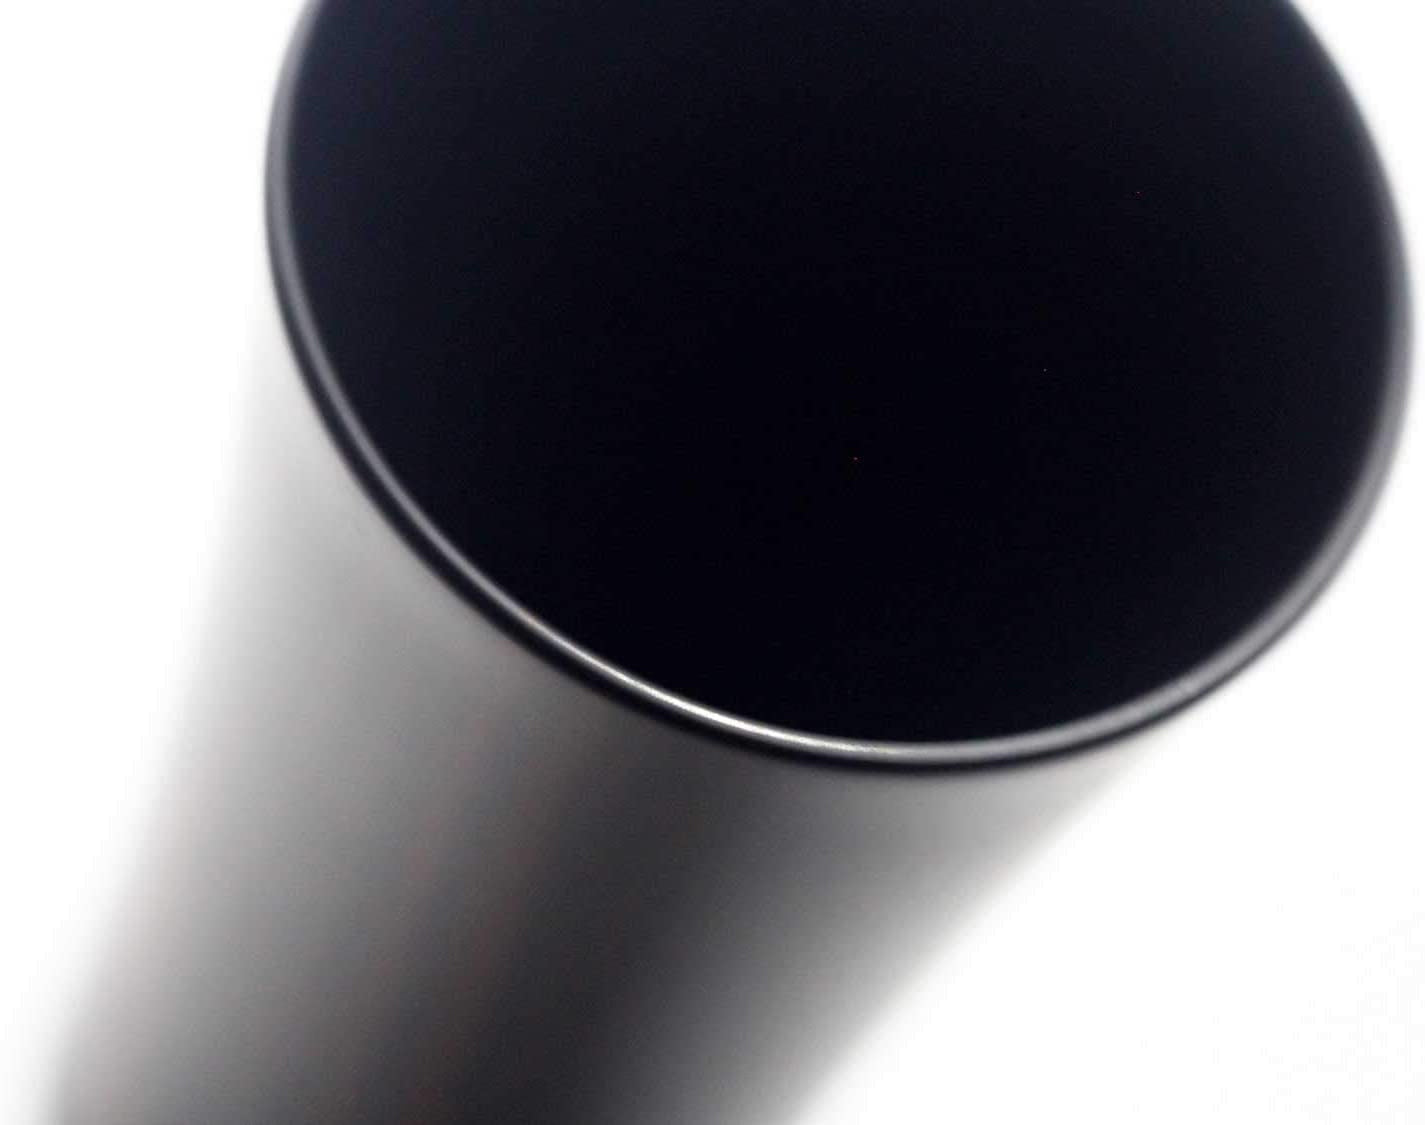 デュボアエボニー 本黒檀 シンプルグラス 口径約4.5cm×高さ約8cm